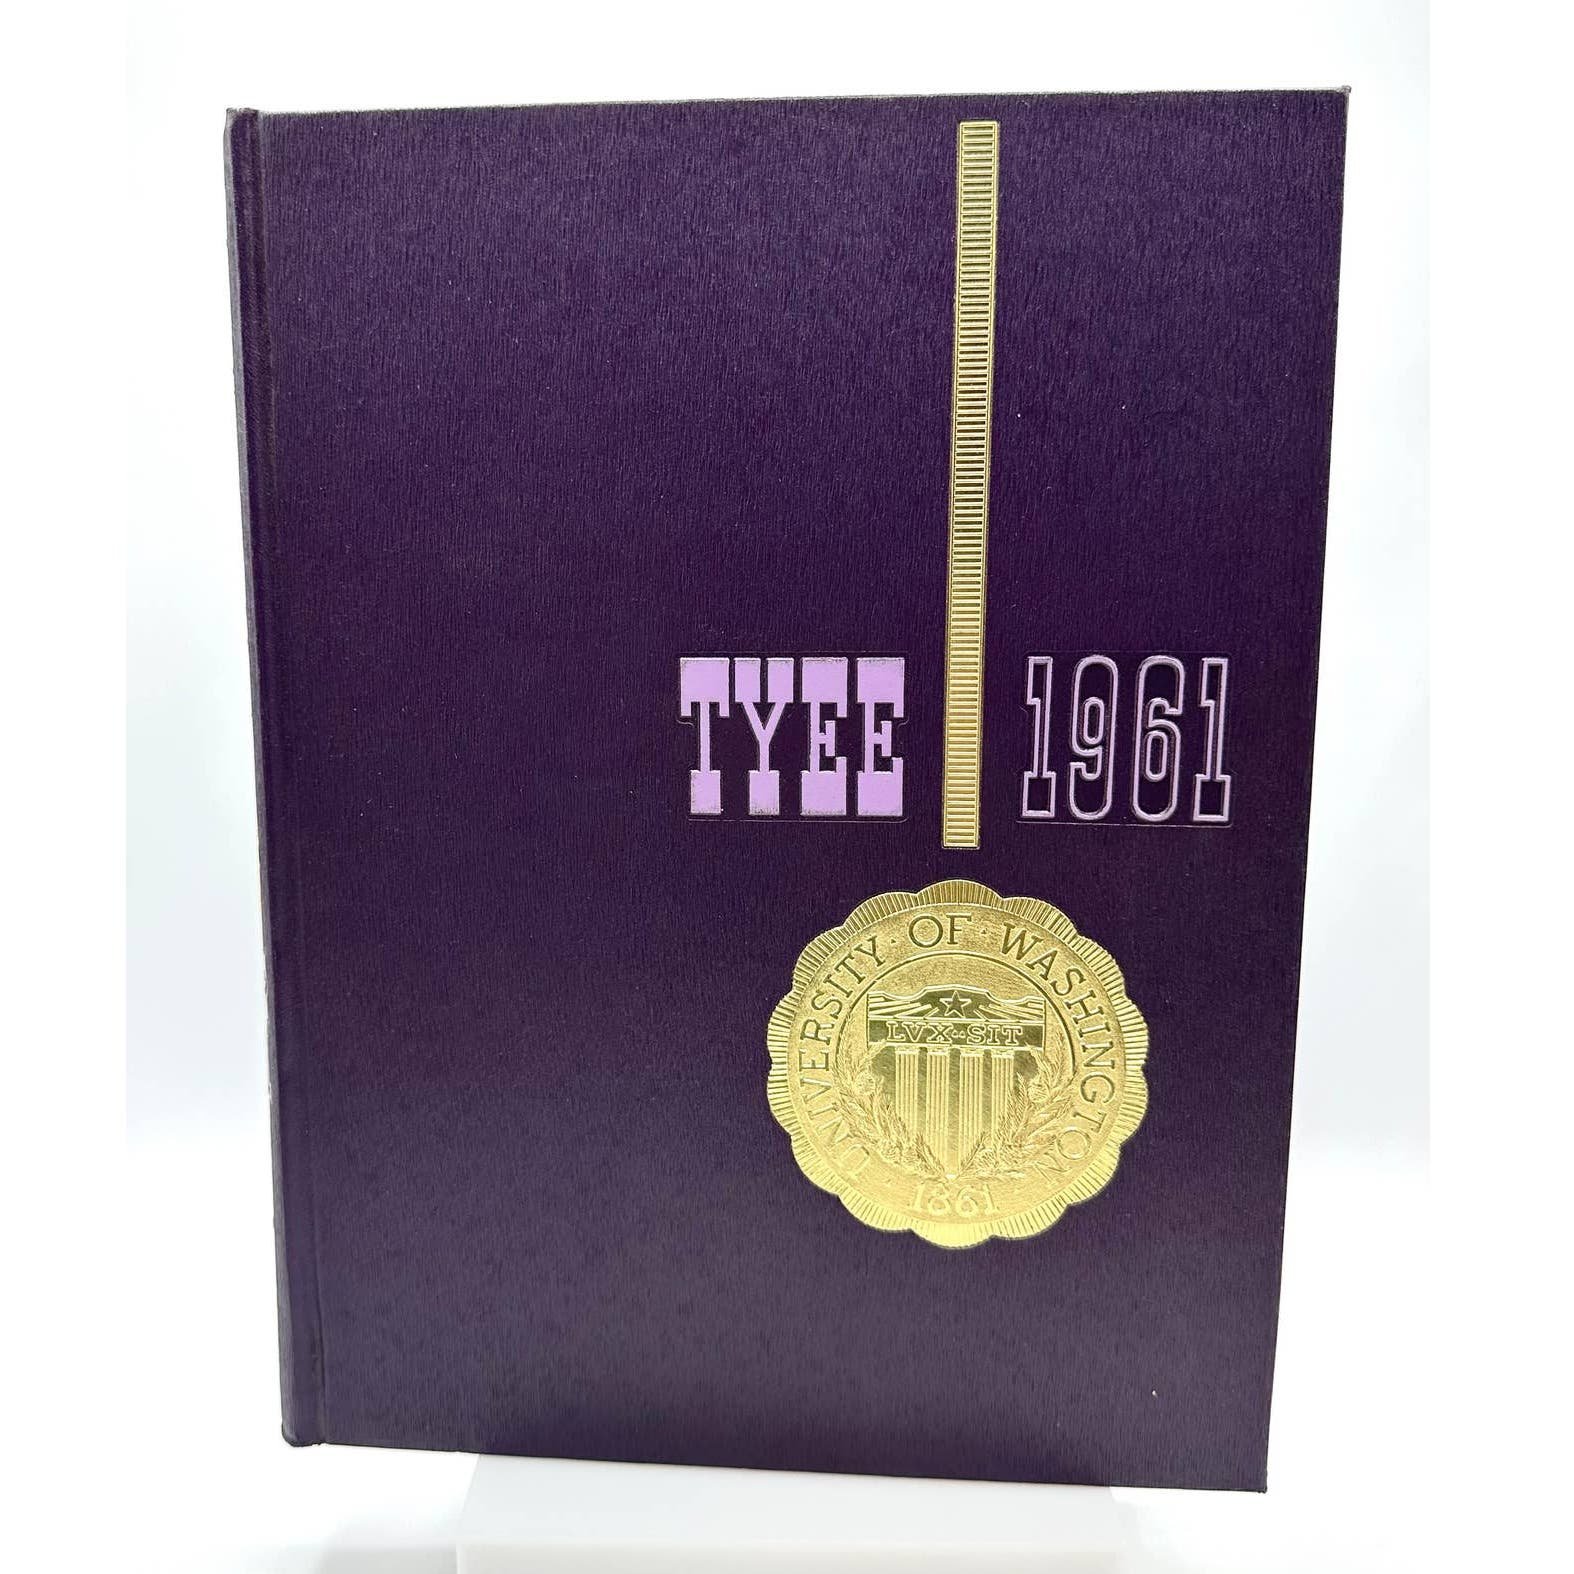 University of Washington 1961 Hardcover TYEE Yearbook Volume 62 6UZTWHuHo